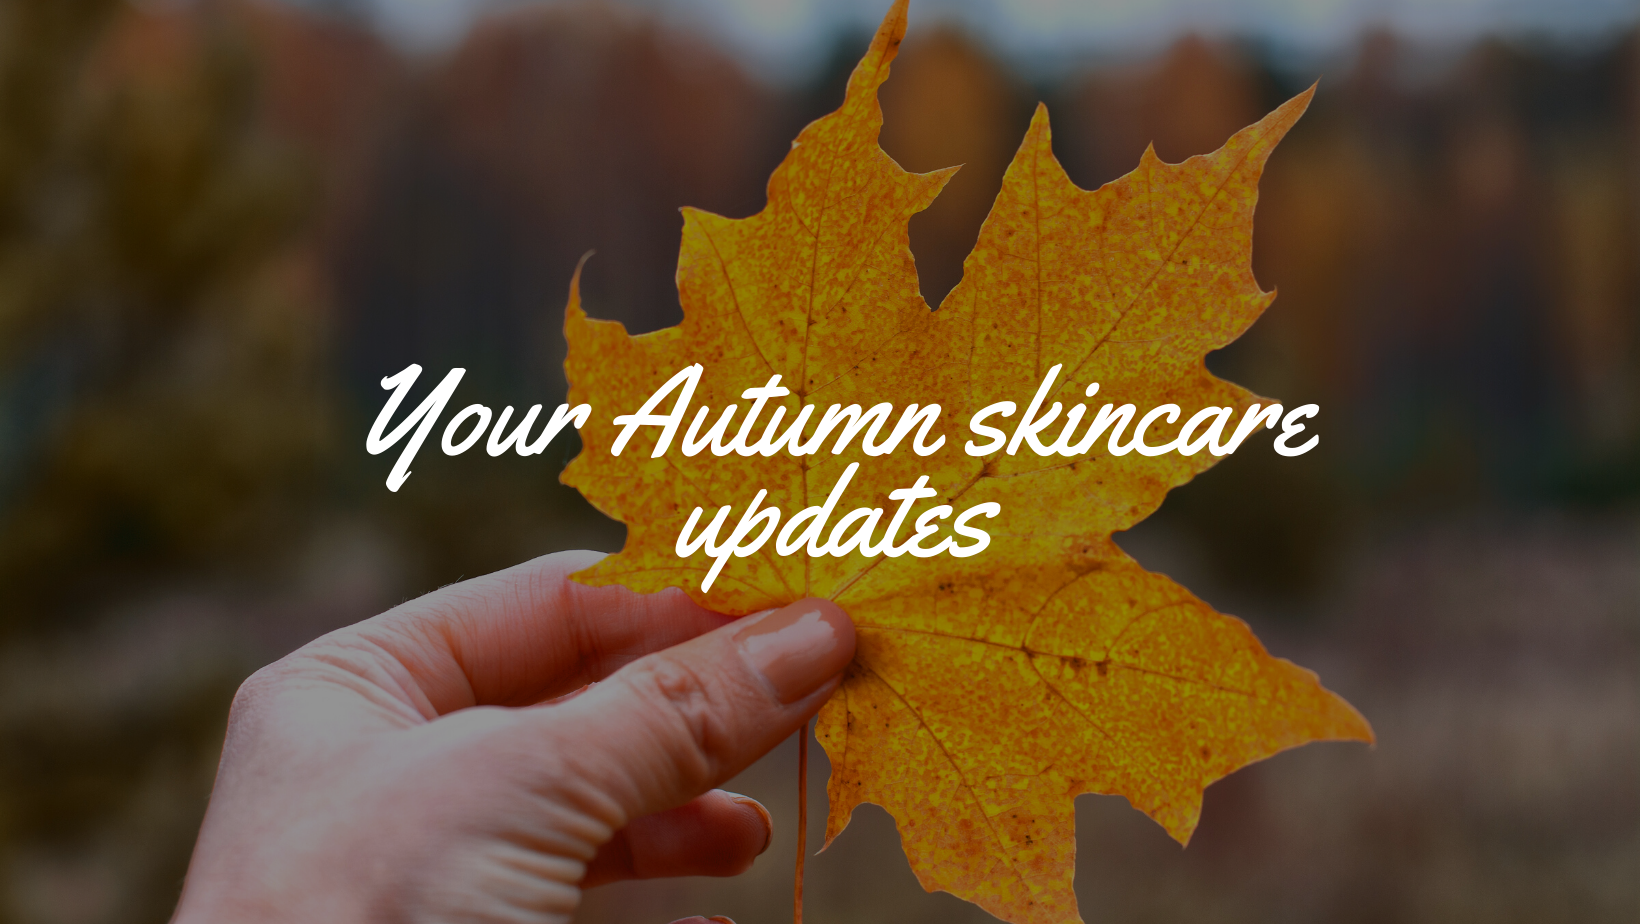 Autumn skincare updates 